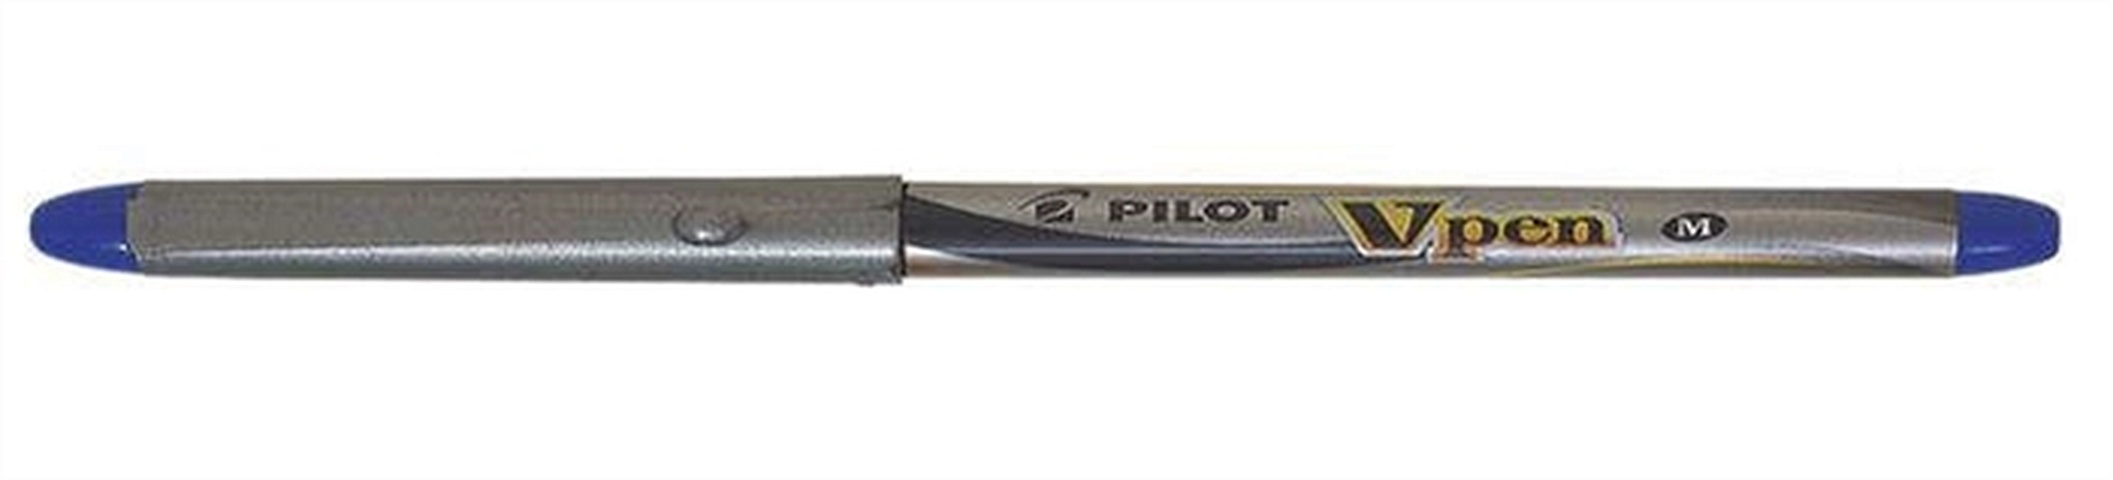 Ручка перьевая, синяя Pilot одноразовая SVP-4M L ручка перьевая pelikan pelikano junior pl924886 бирюзовый a перо сталь нержавеющая для правшей карт уп